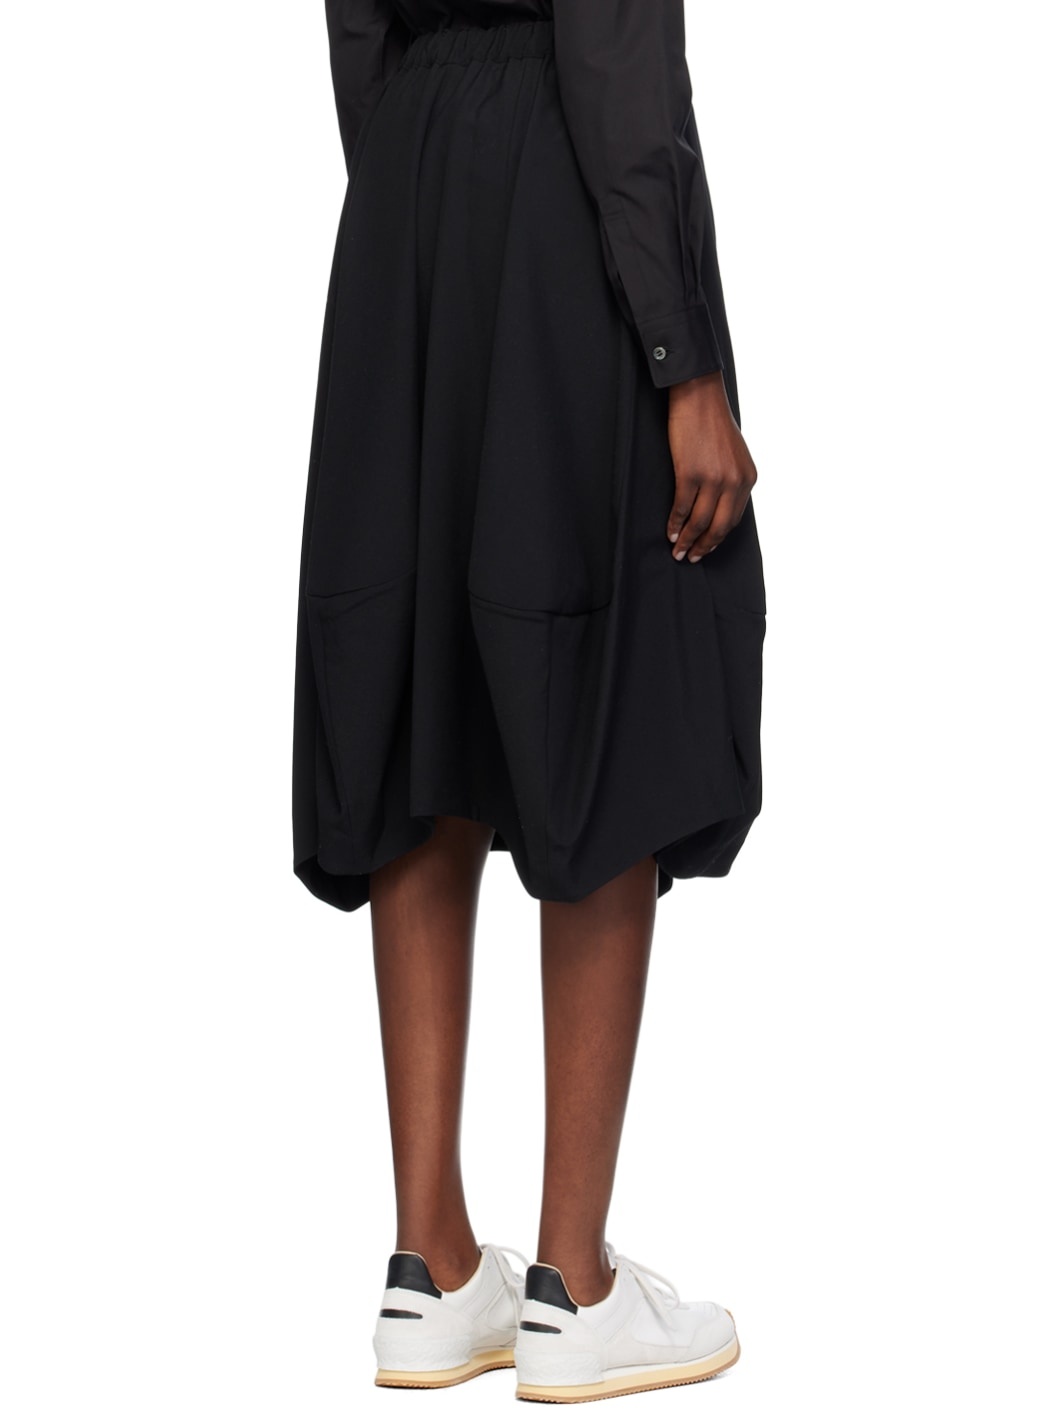 Black Paneled Midi Skirt - 3